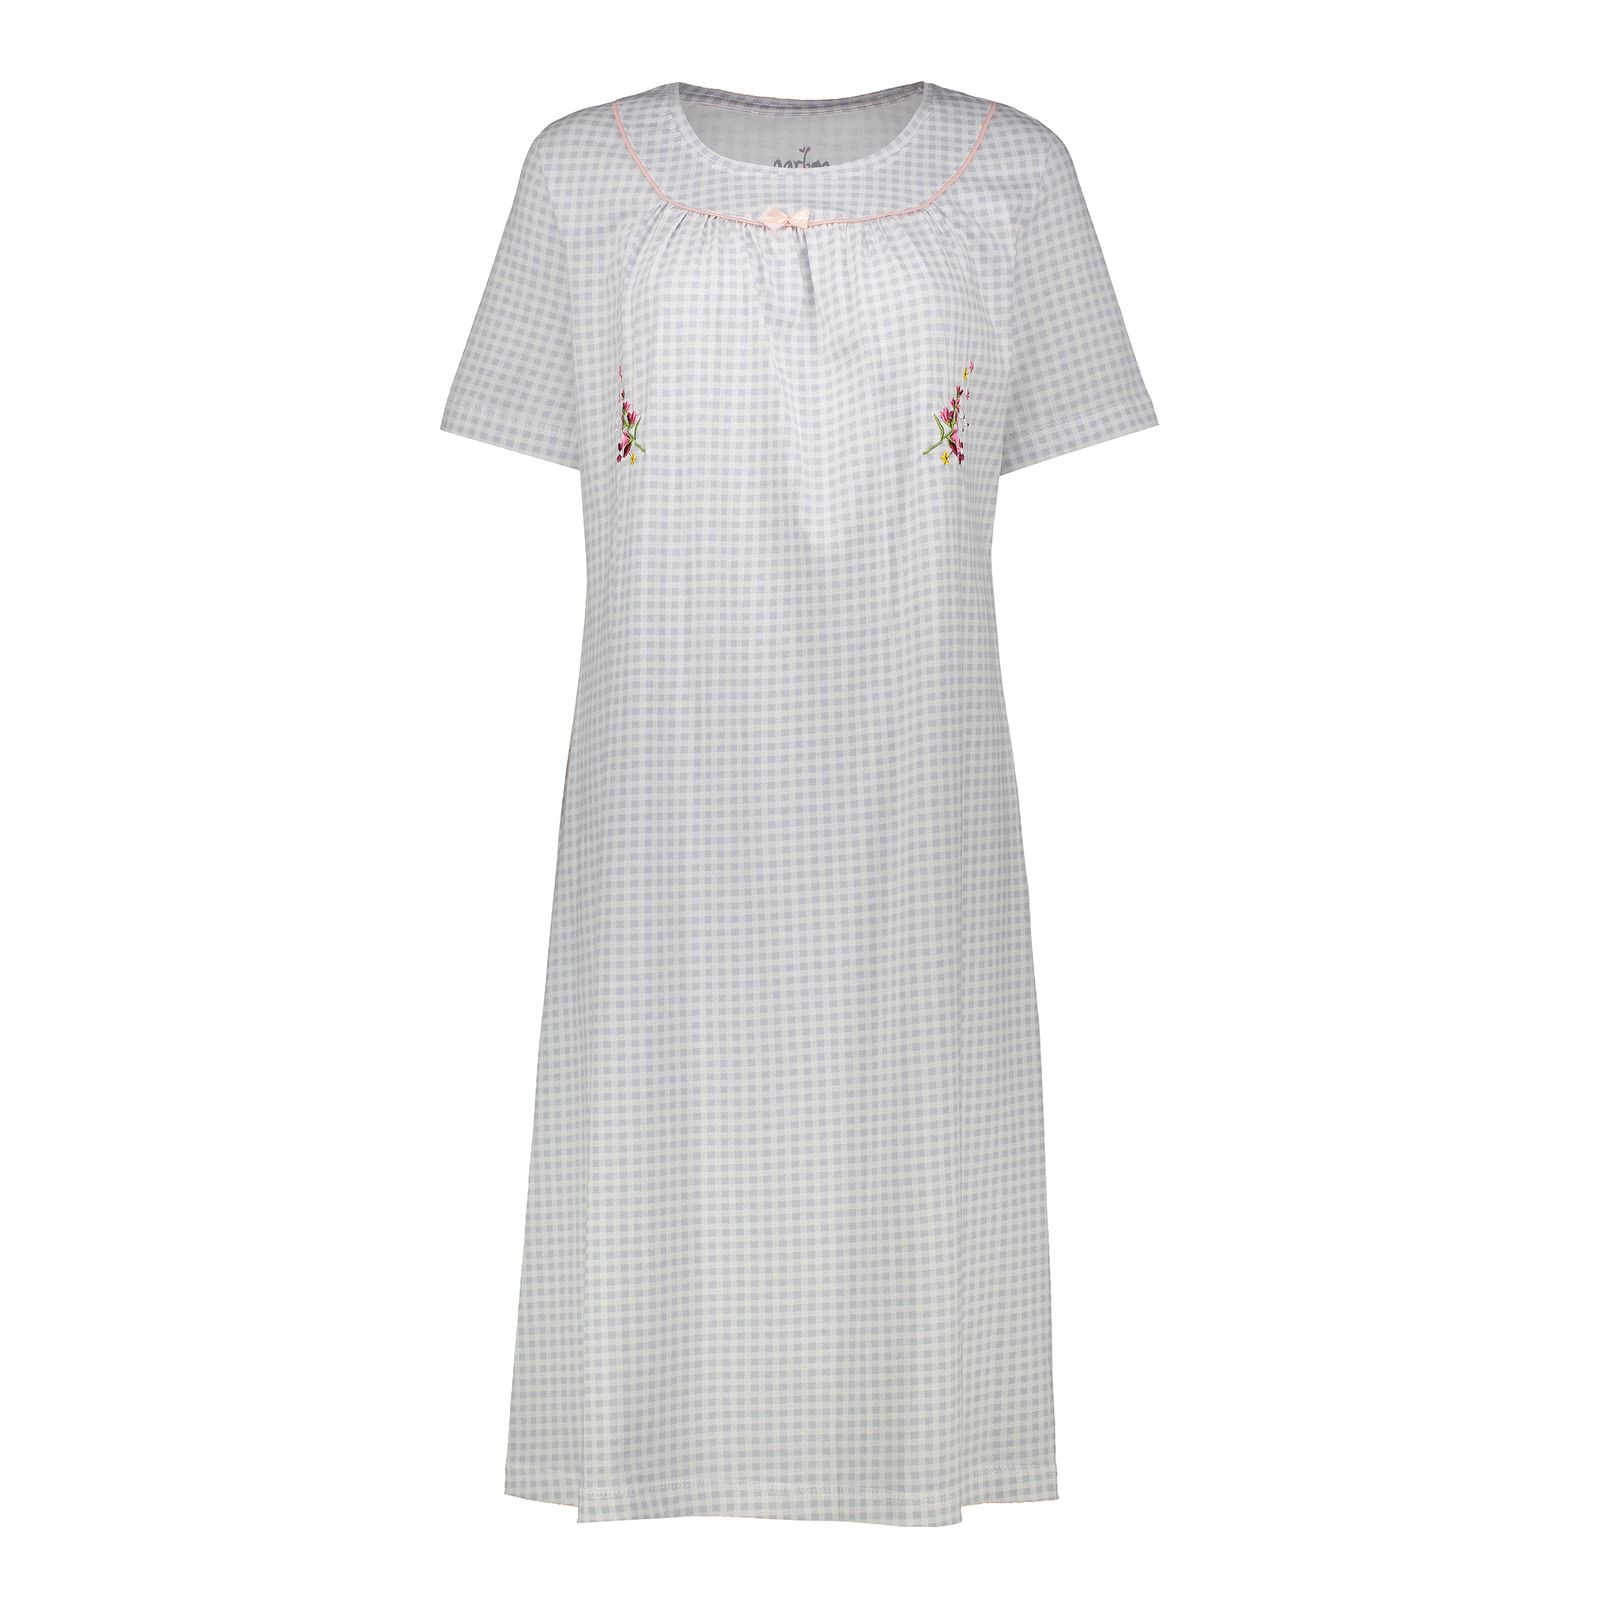 پیراهن زنانه ناربن مدل 1521789-3402 رنگ سفید